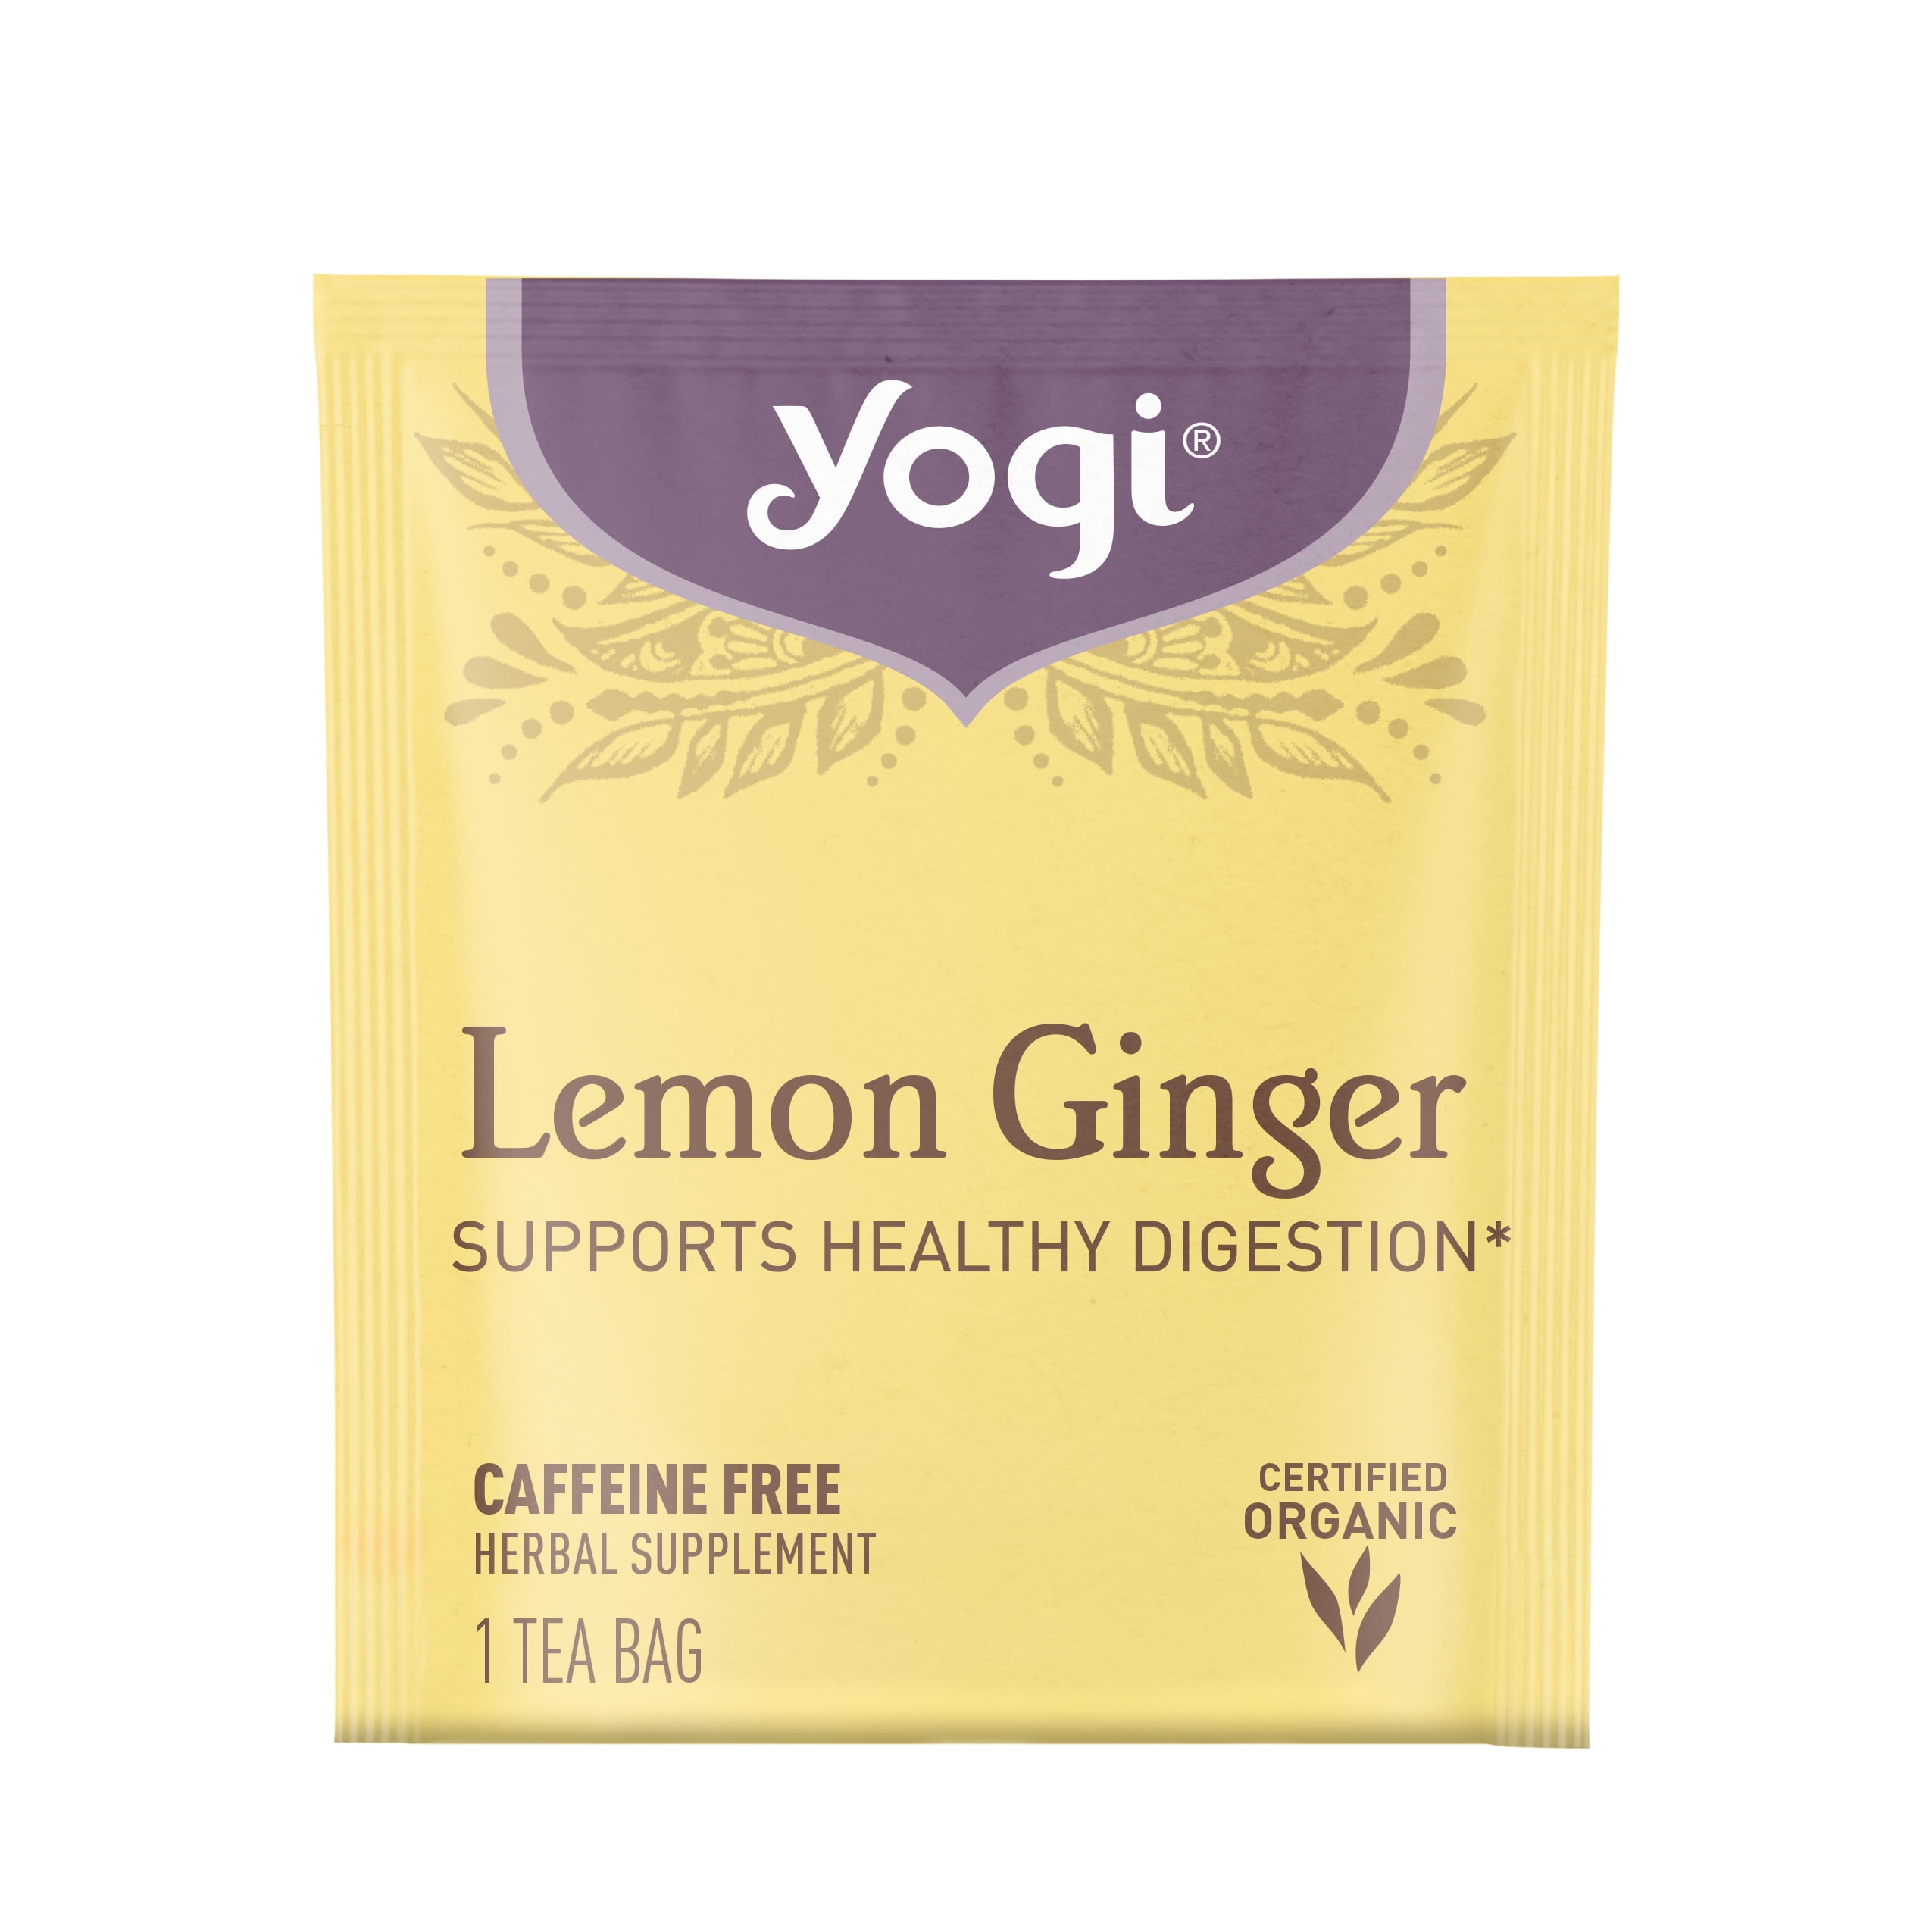 Yogi Lemon Ginger 16 tea bags – Healthy Options